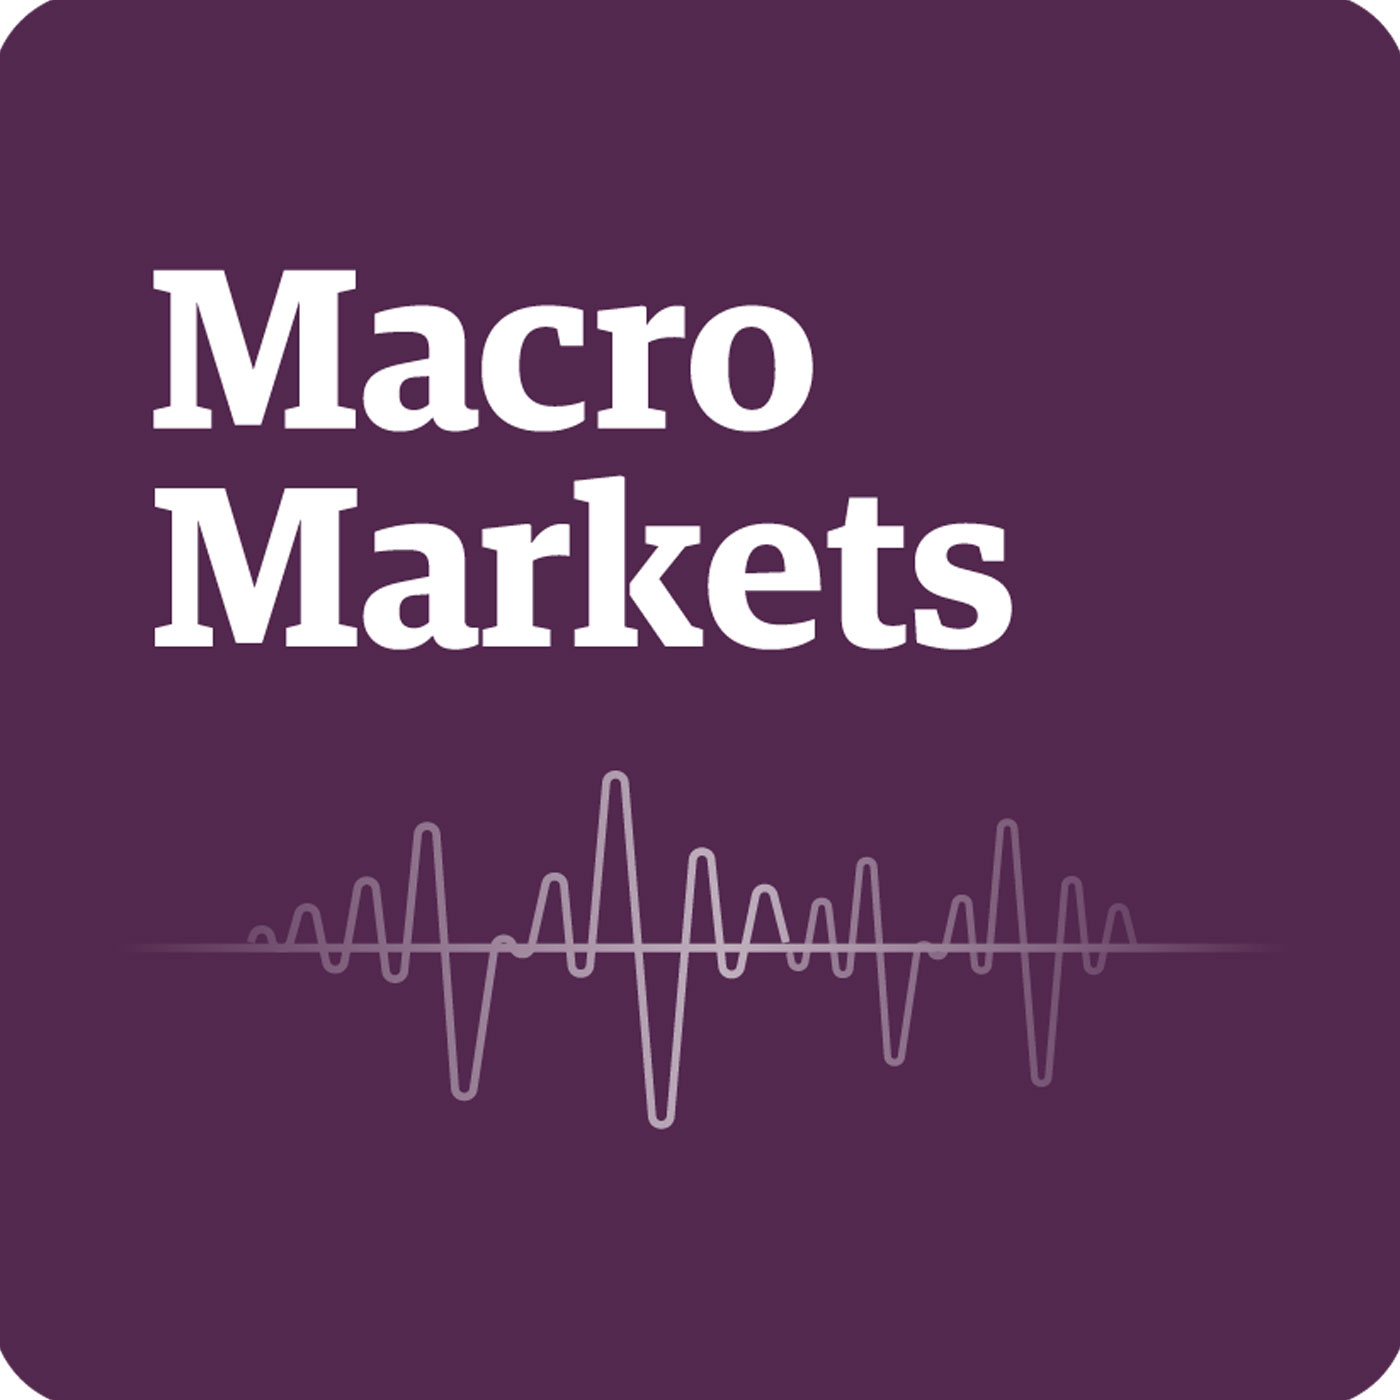 Artwork for podcast Guggenheim Macro Markets